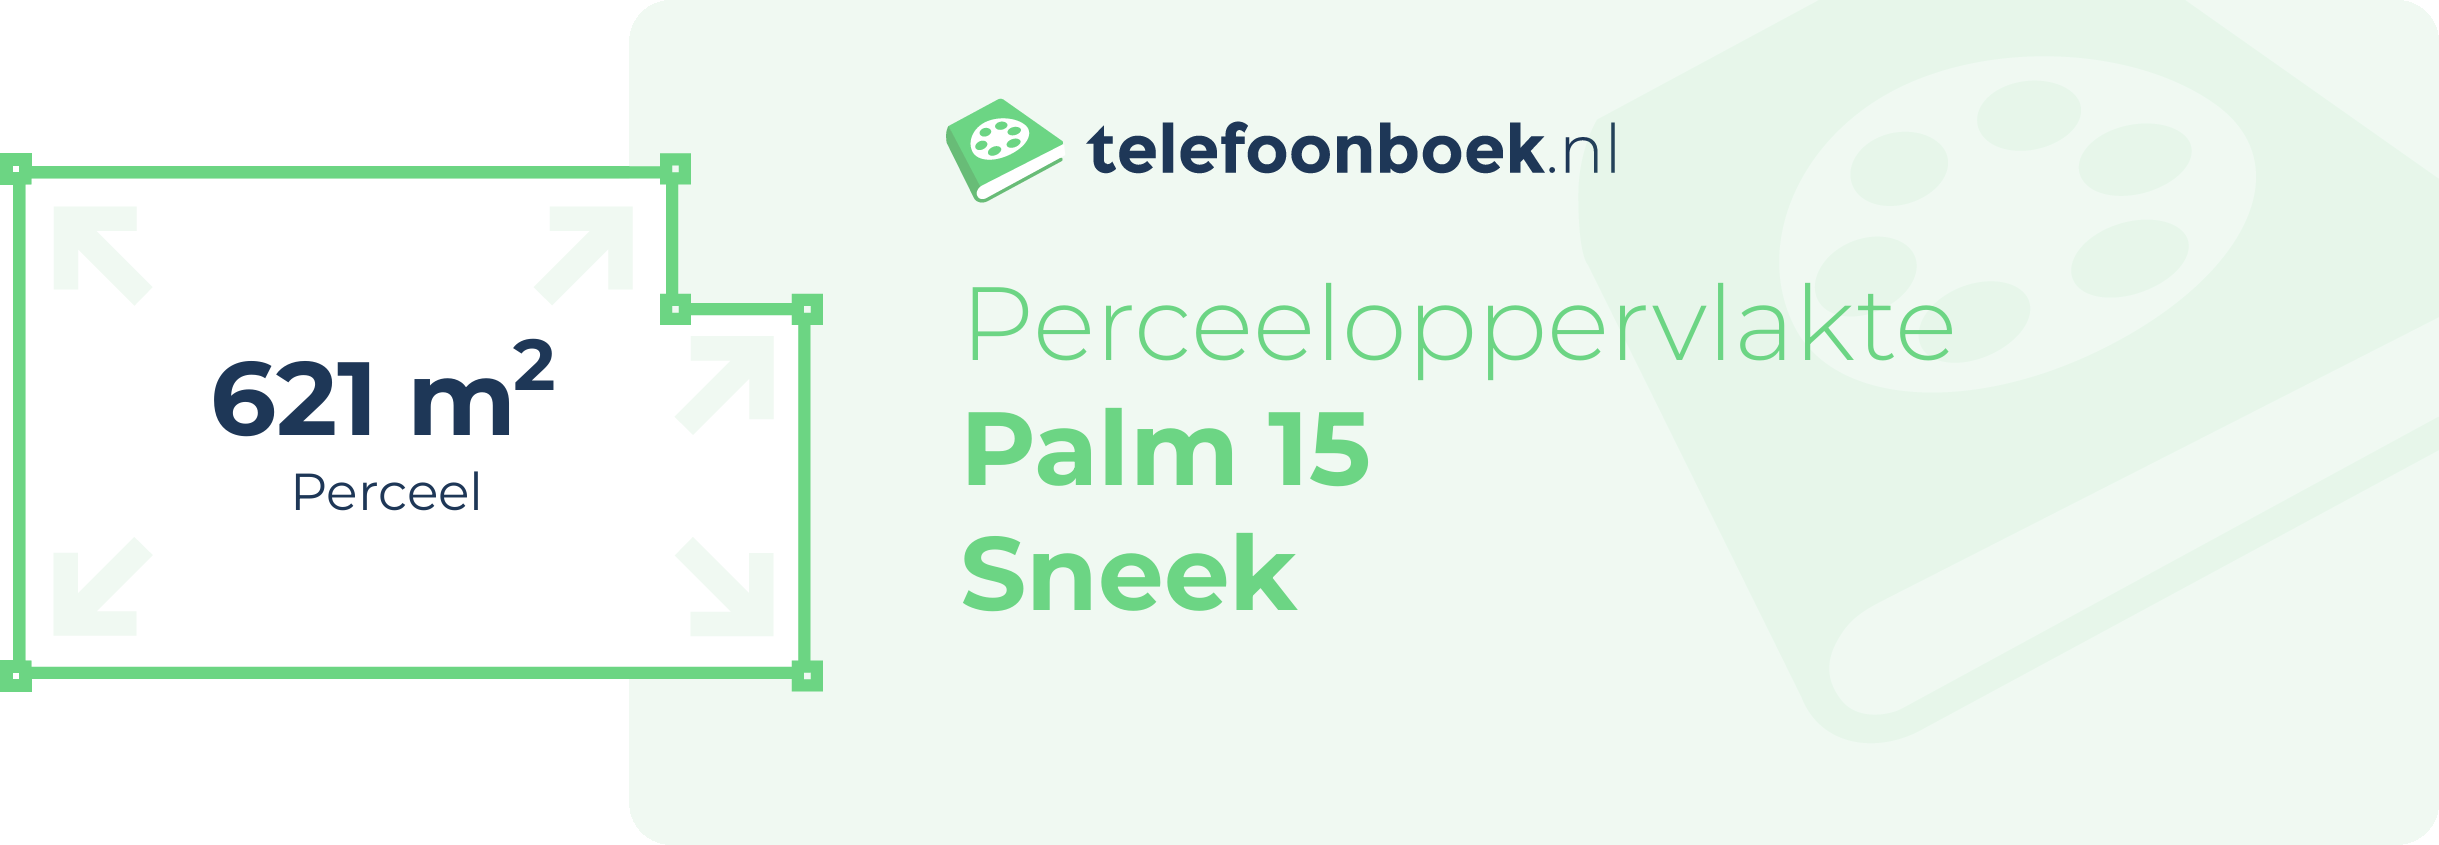 Perceeloppervlakte Palm 15 Sneek